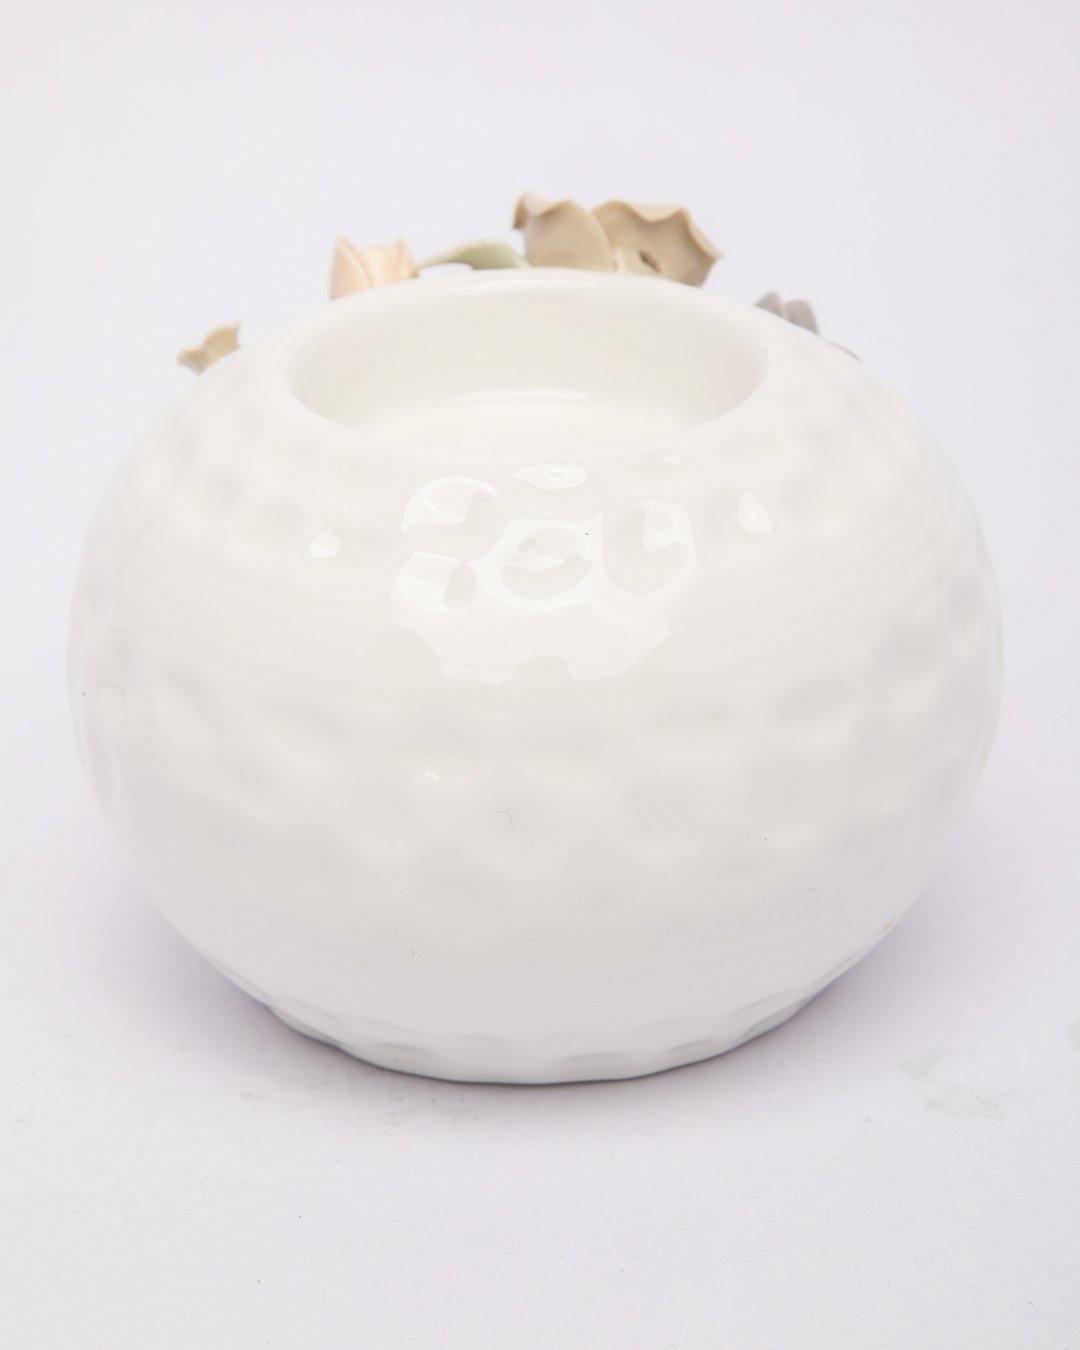 T-Light Holder, Flower Design, White, Ceramic - MARKET 99